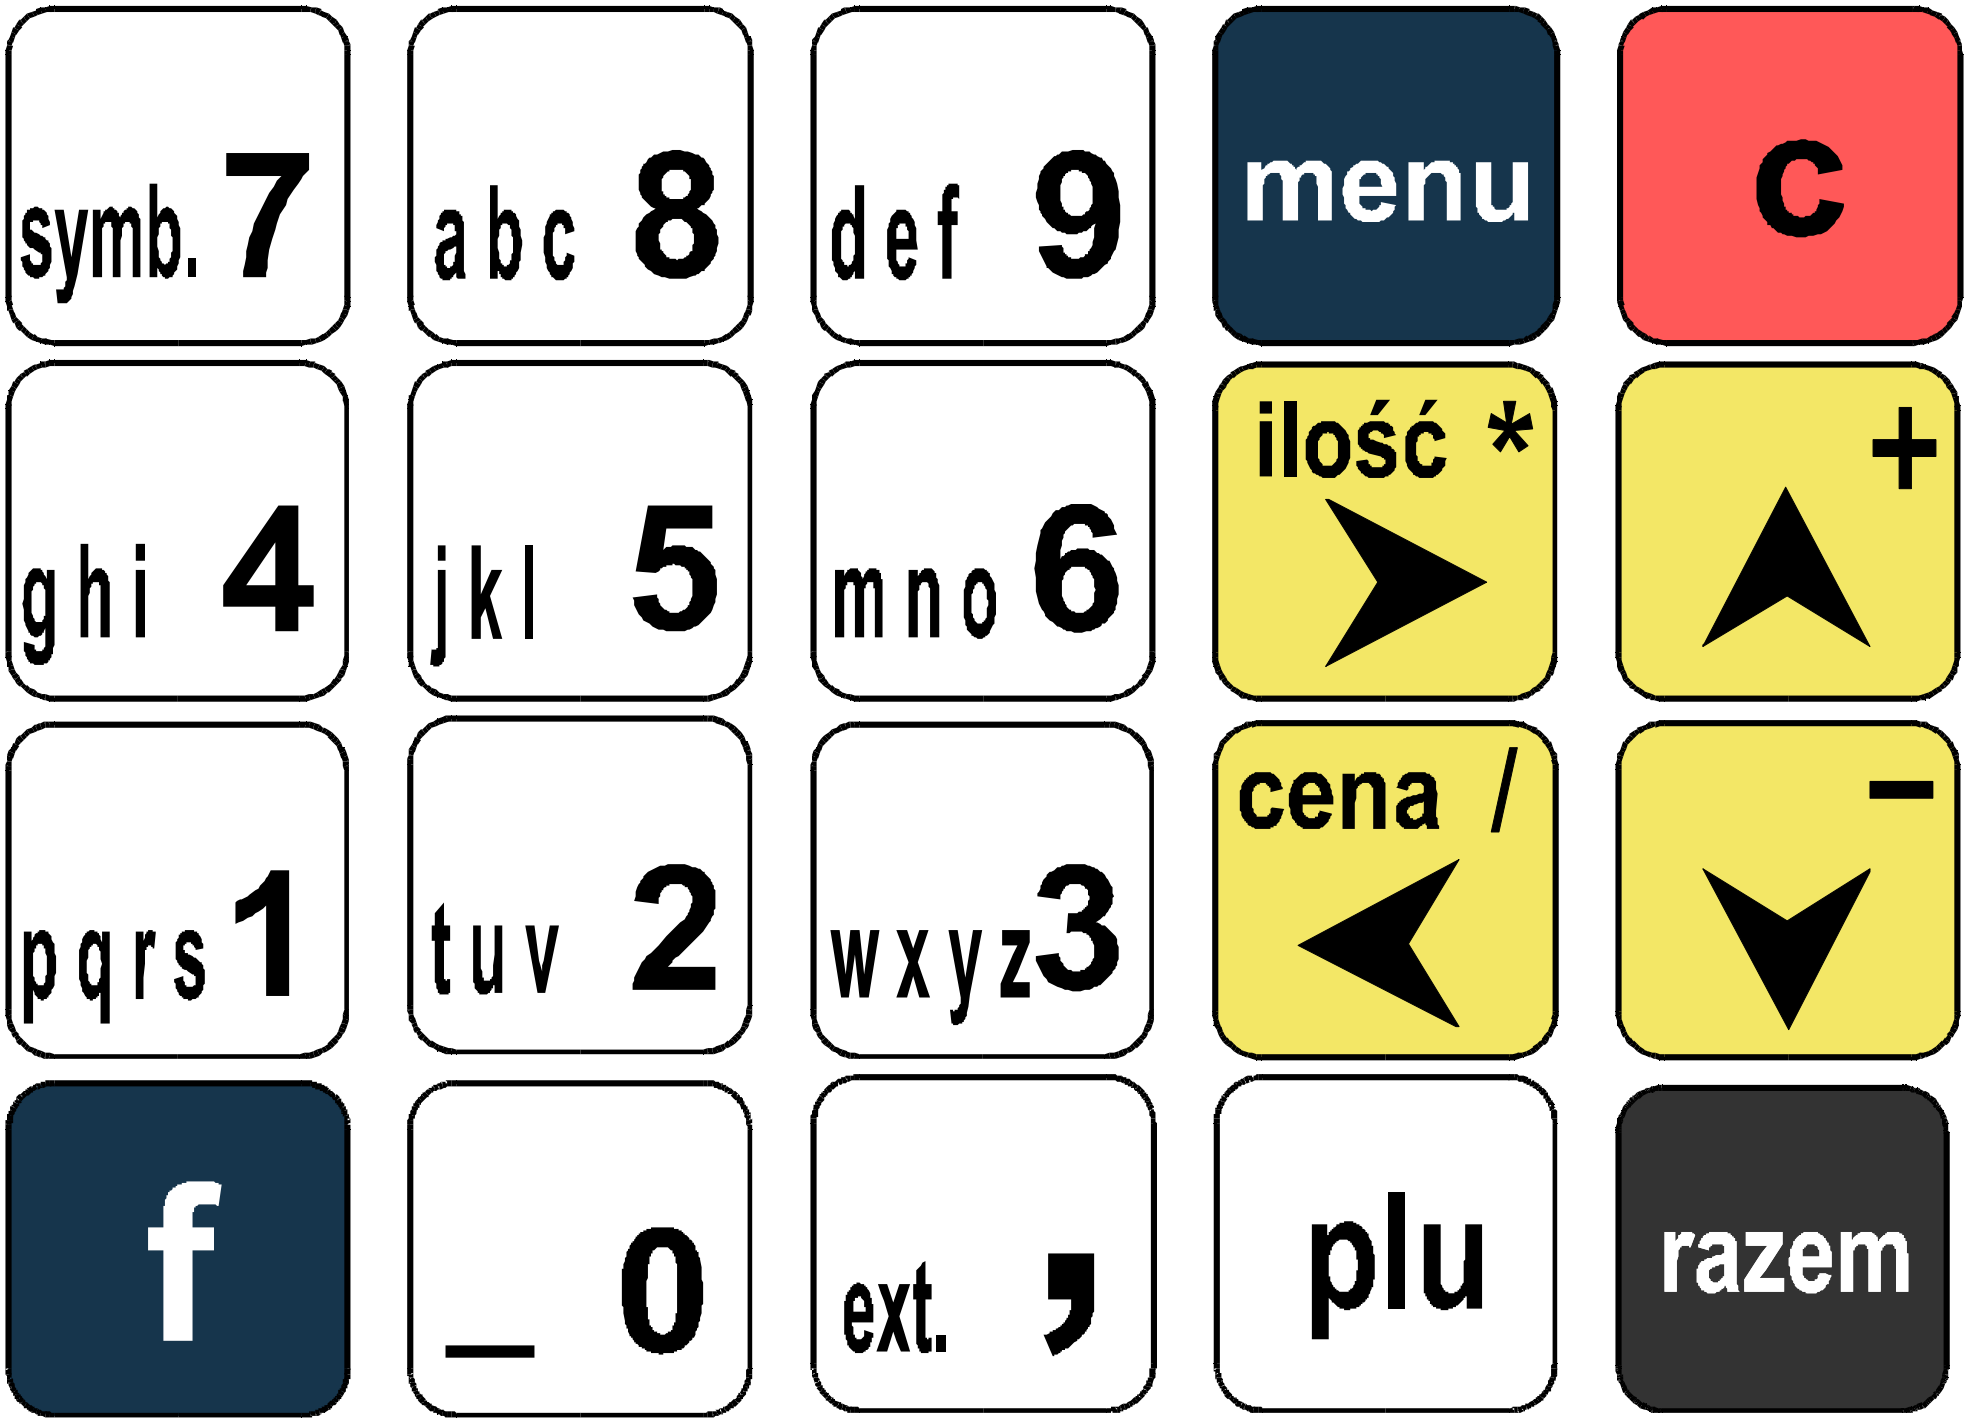 Klawiatura Schemat układu panelu klawiatury Uwaga: Wygląd symboli nadrukowanych na klawiszach kasy może się nieznacznie różnić od przedstawionego Funkcje poszczególnych klawiszy Klawisze od